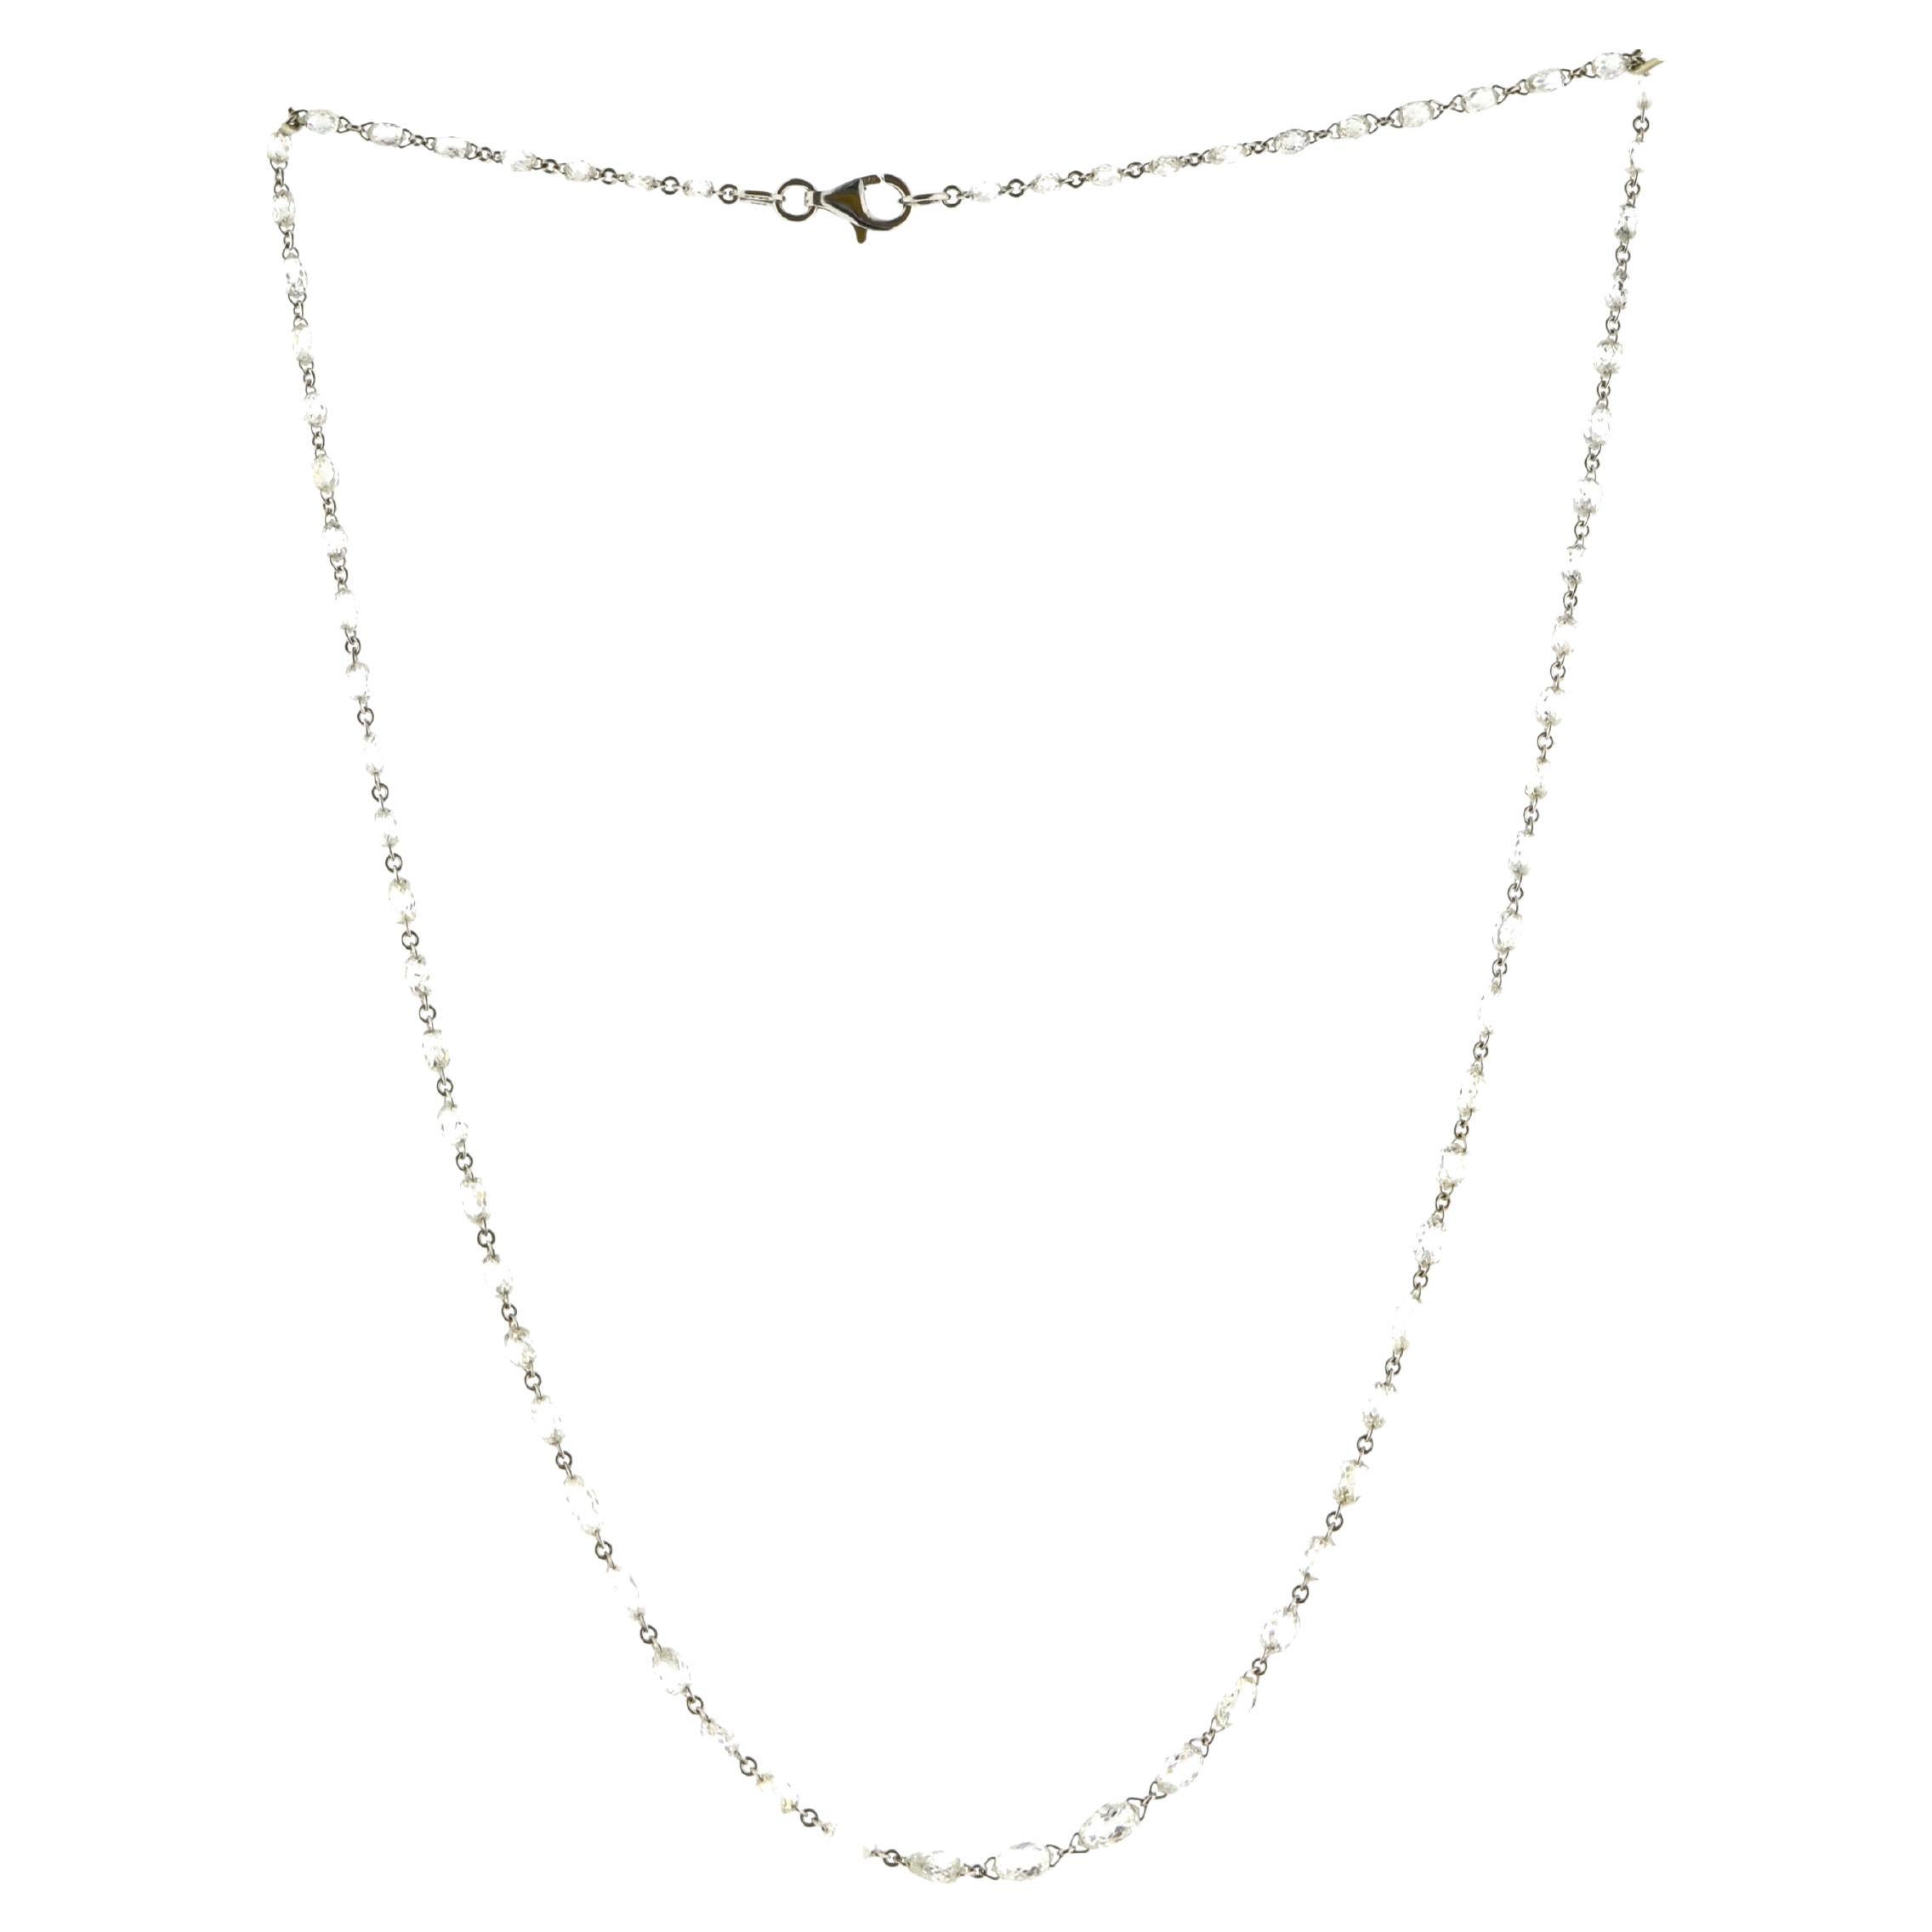 JR 15.14 Carat Briolette Cut Diamond 18 Karat White Gold Necklace For Sale